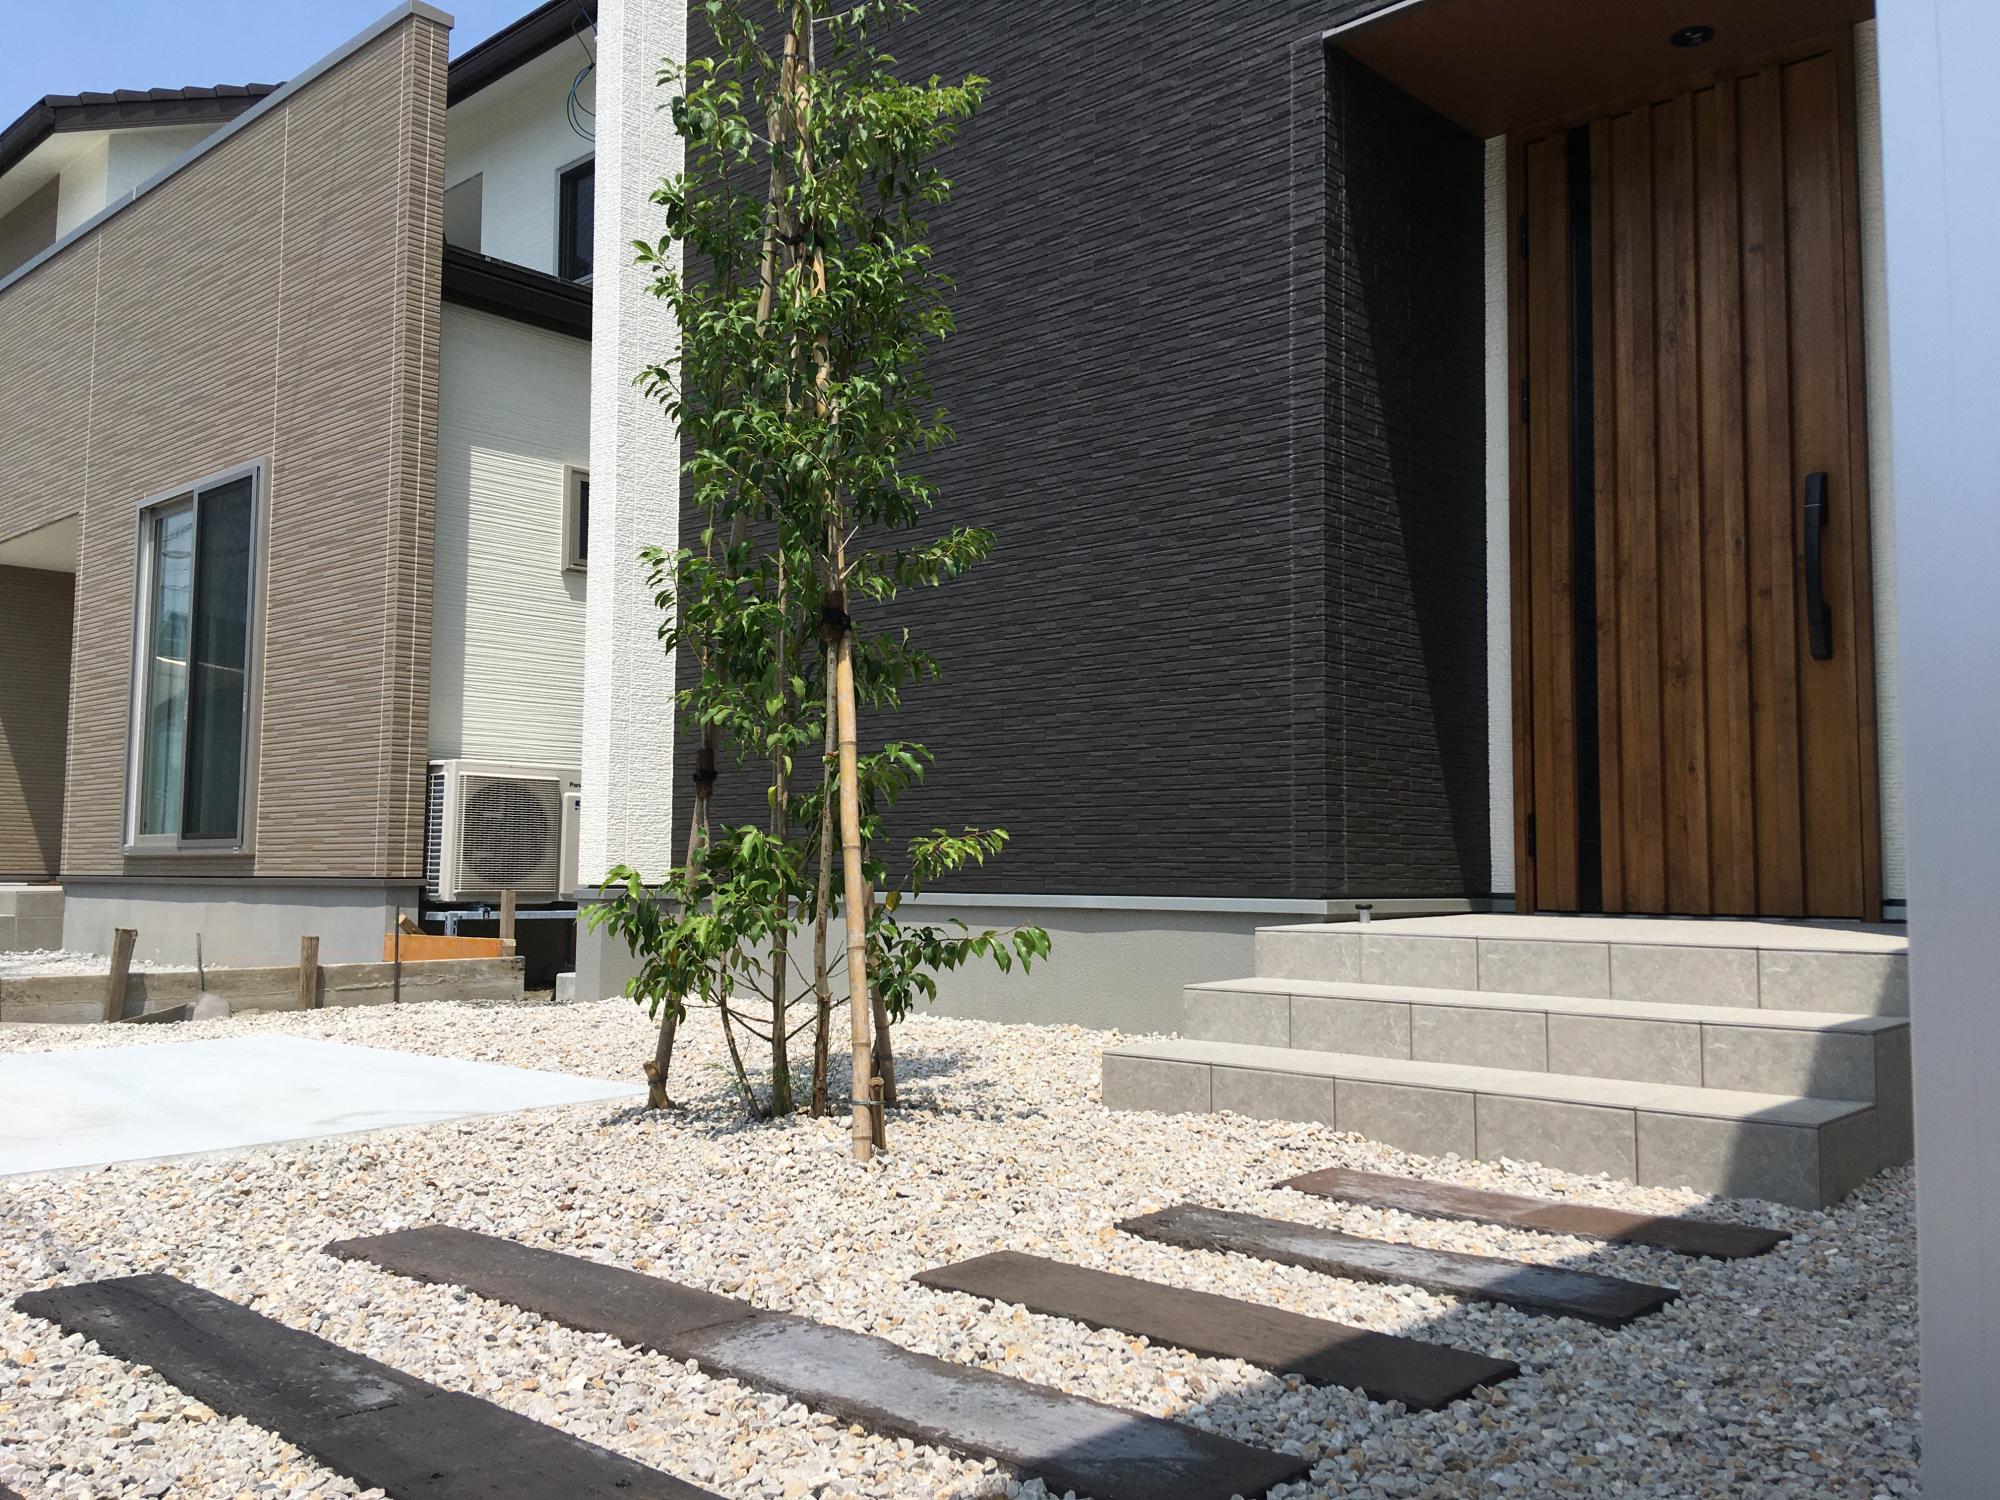 シンボルツリーにオススメの庭木 テイスト別にご紹介 ブログ グリーングローブ L 富山県の庭づくりとエクステリア